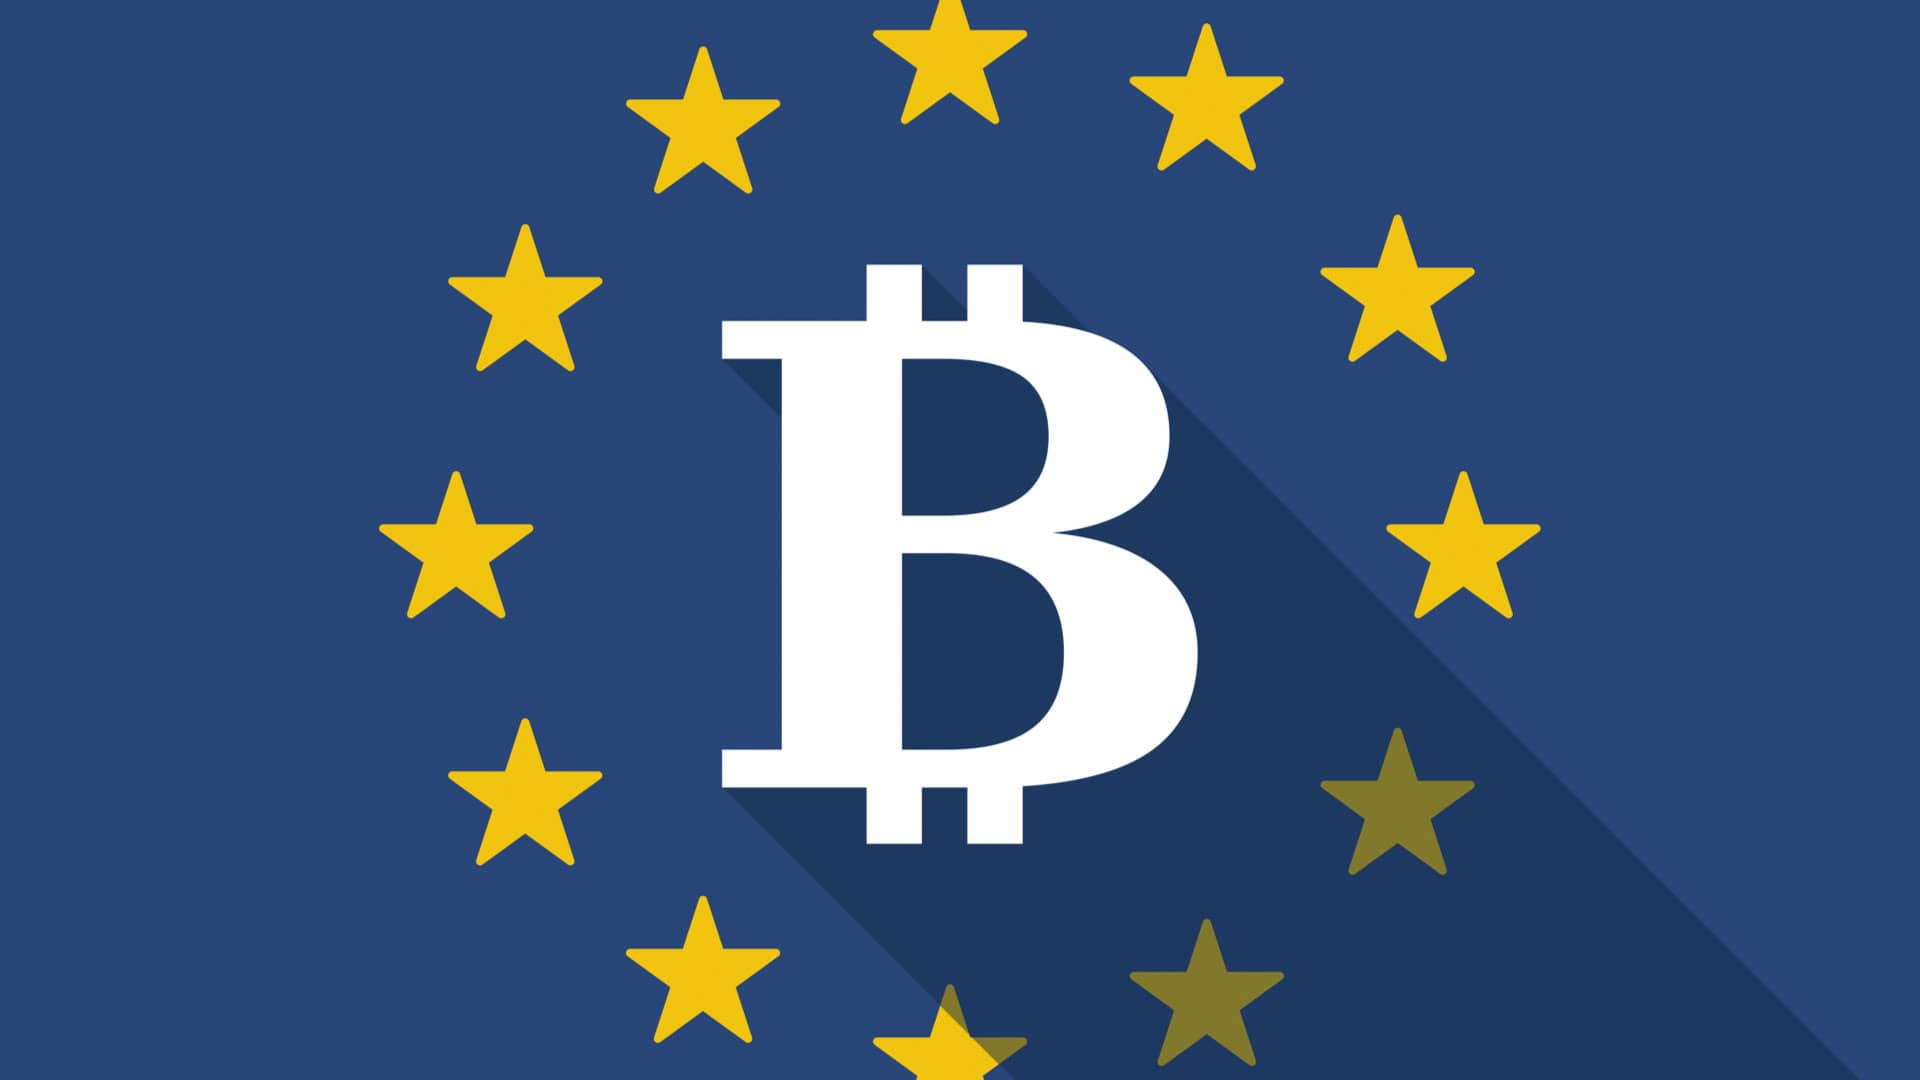 Bandeira da Europa e símbolo do Bitcoin.